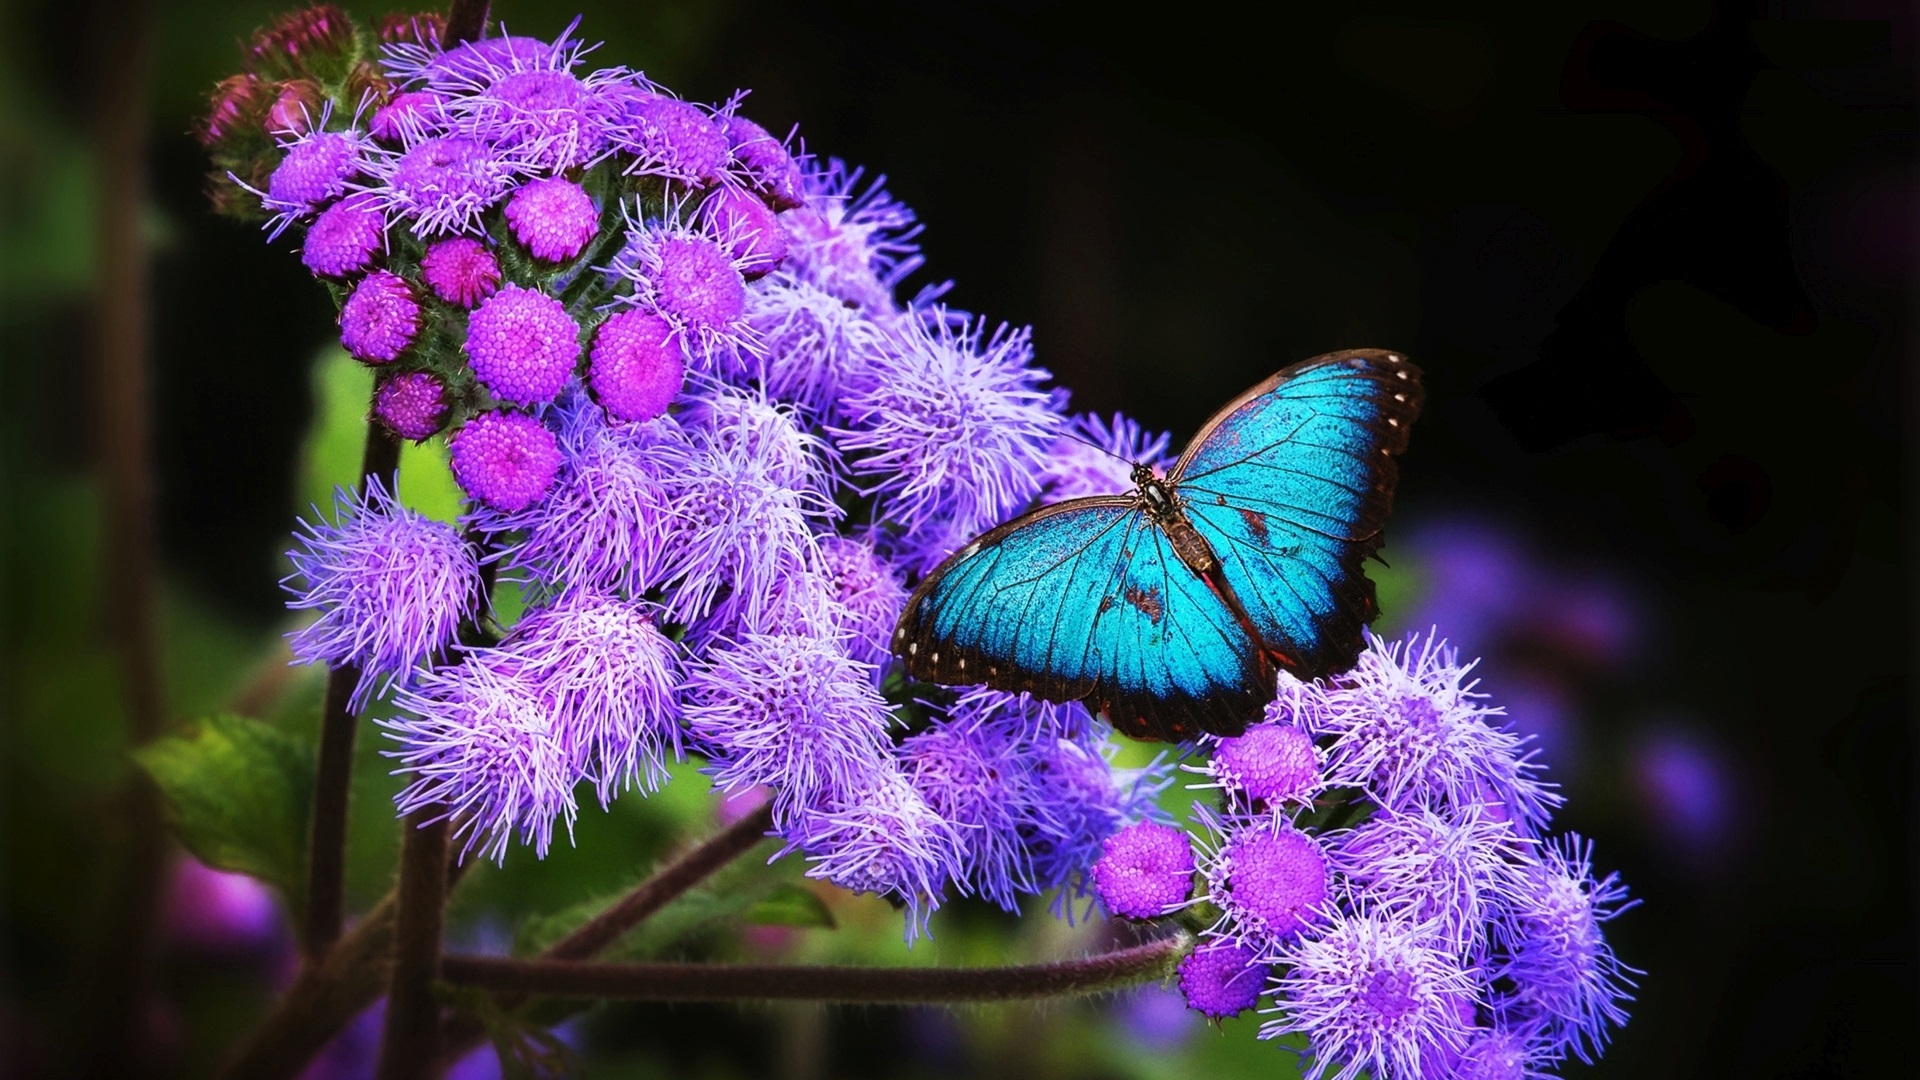 Blue Butterfly Wallpaper HD | PixelsTalk.Net